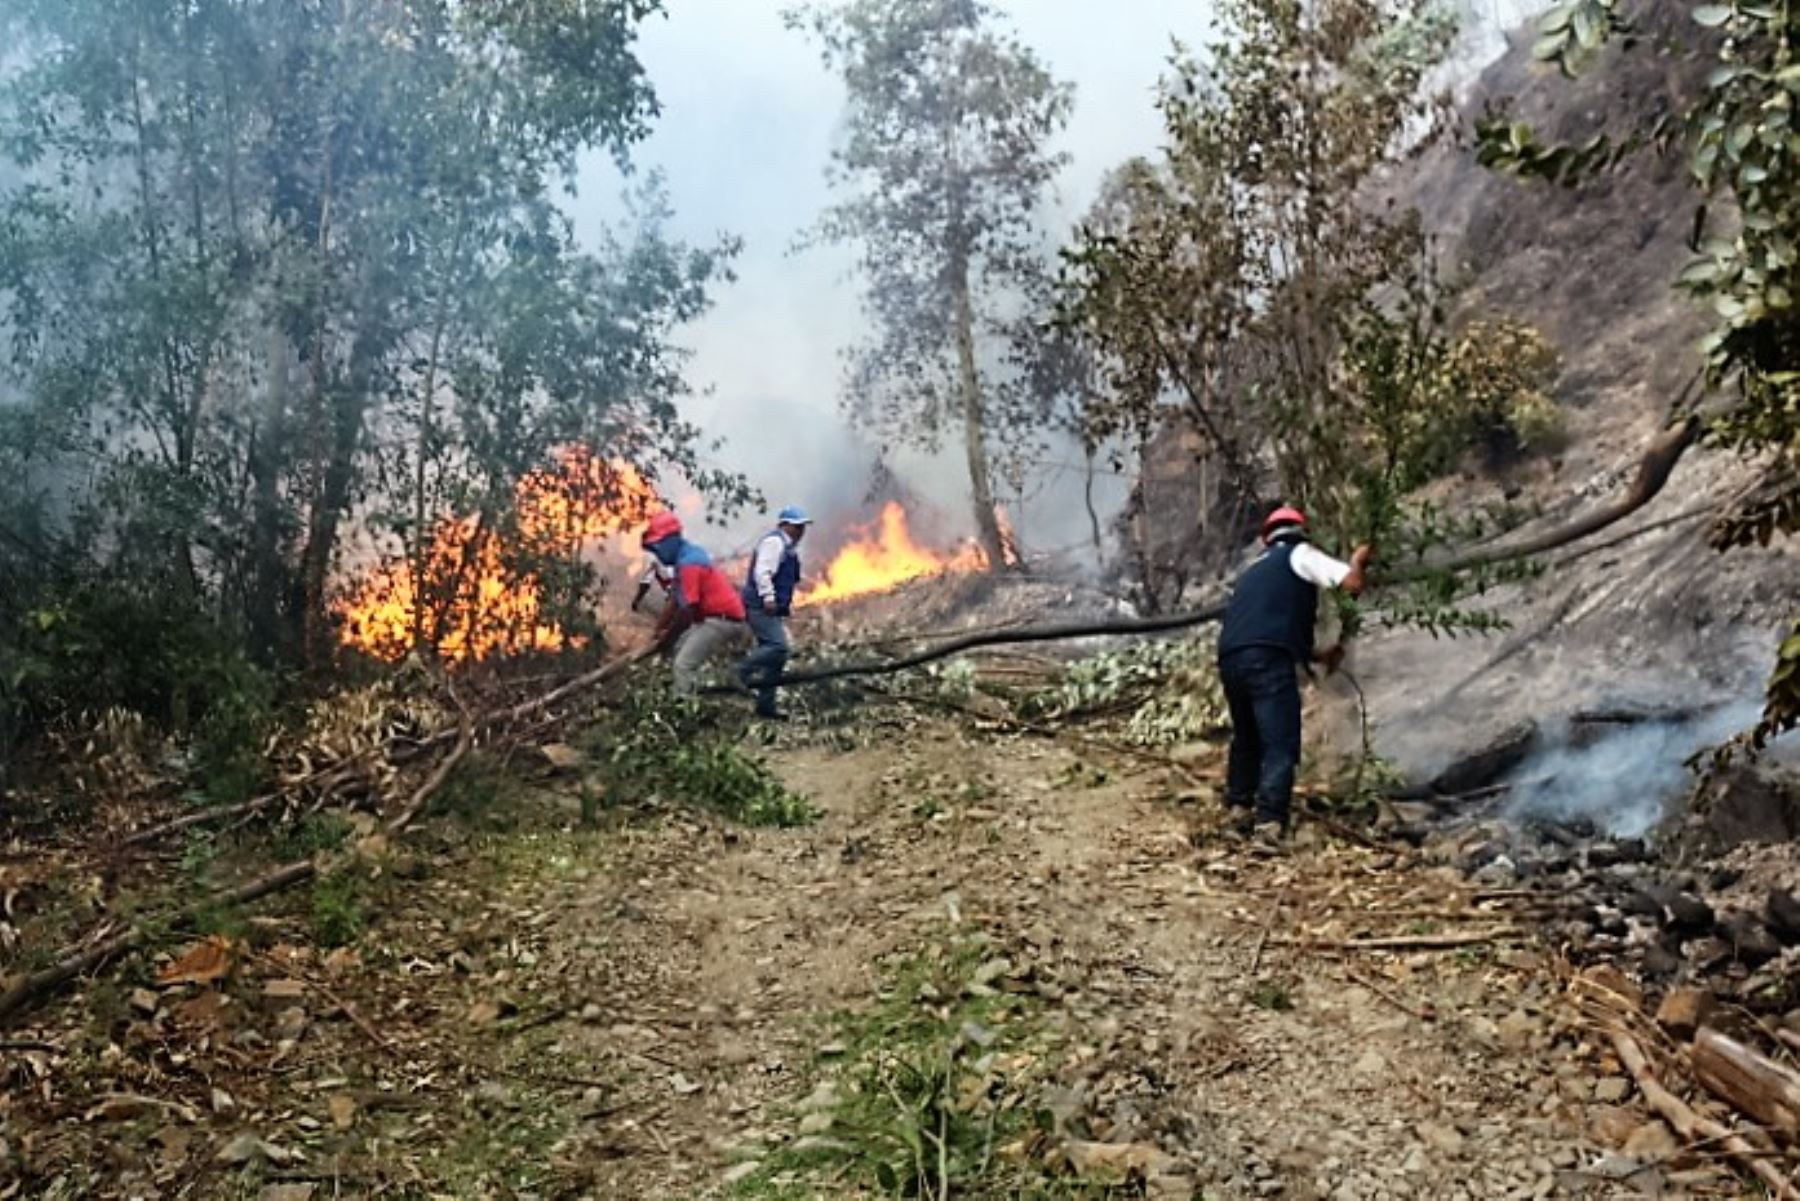 Bomberos, Policía Nacional, municipalidades distritales y comuneros realizan trabajos de extinción de los incendios forestales que se presentan en diversos puntos de las regiones Cajamarca, Ayacucho y Pasco, informó el Instituto Nacional de Defensa Civil (Indeci) y la Policía Nacional.ANDINA